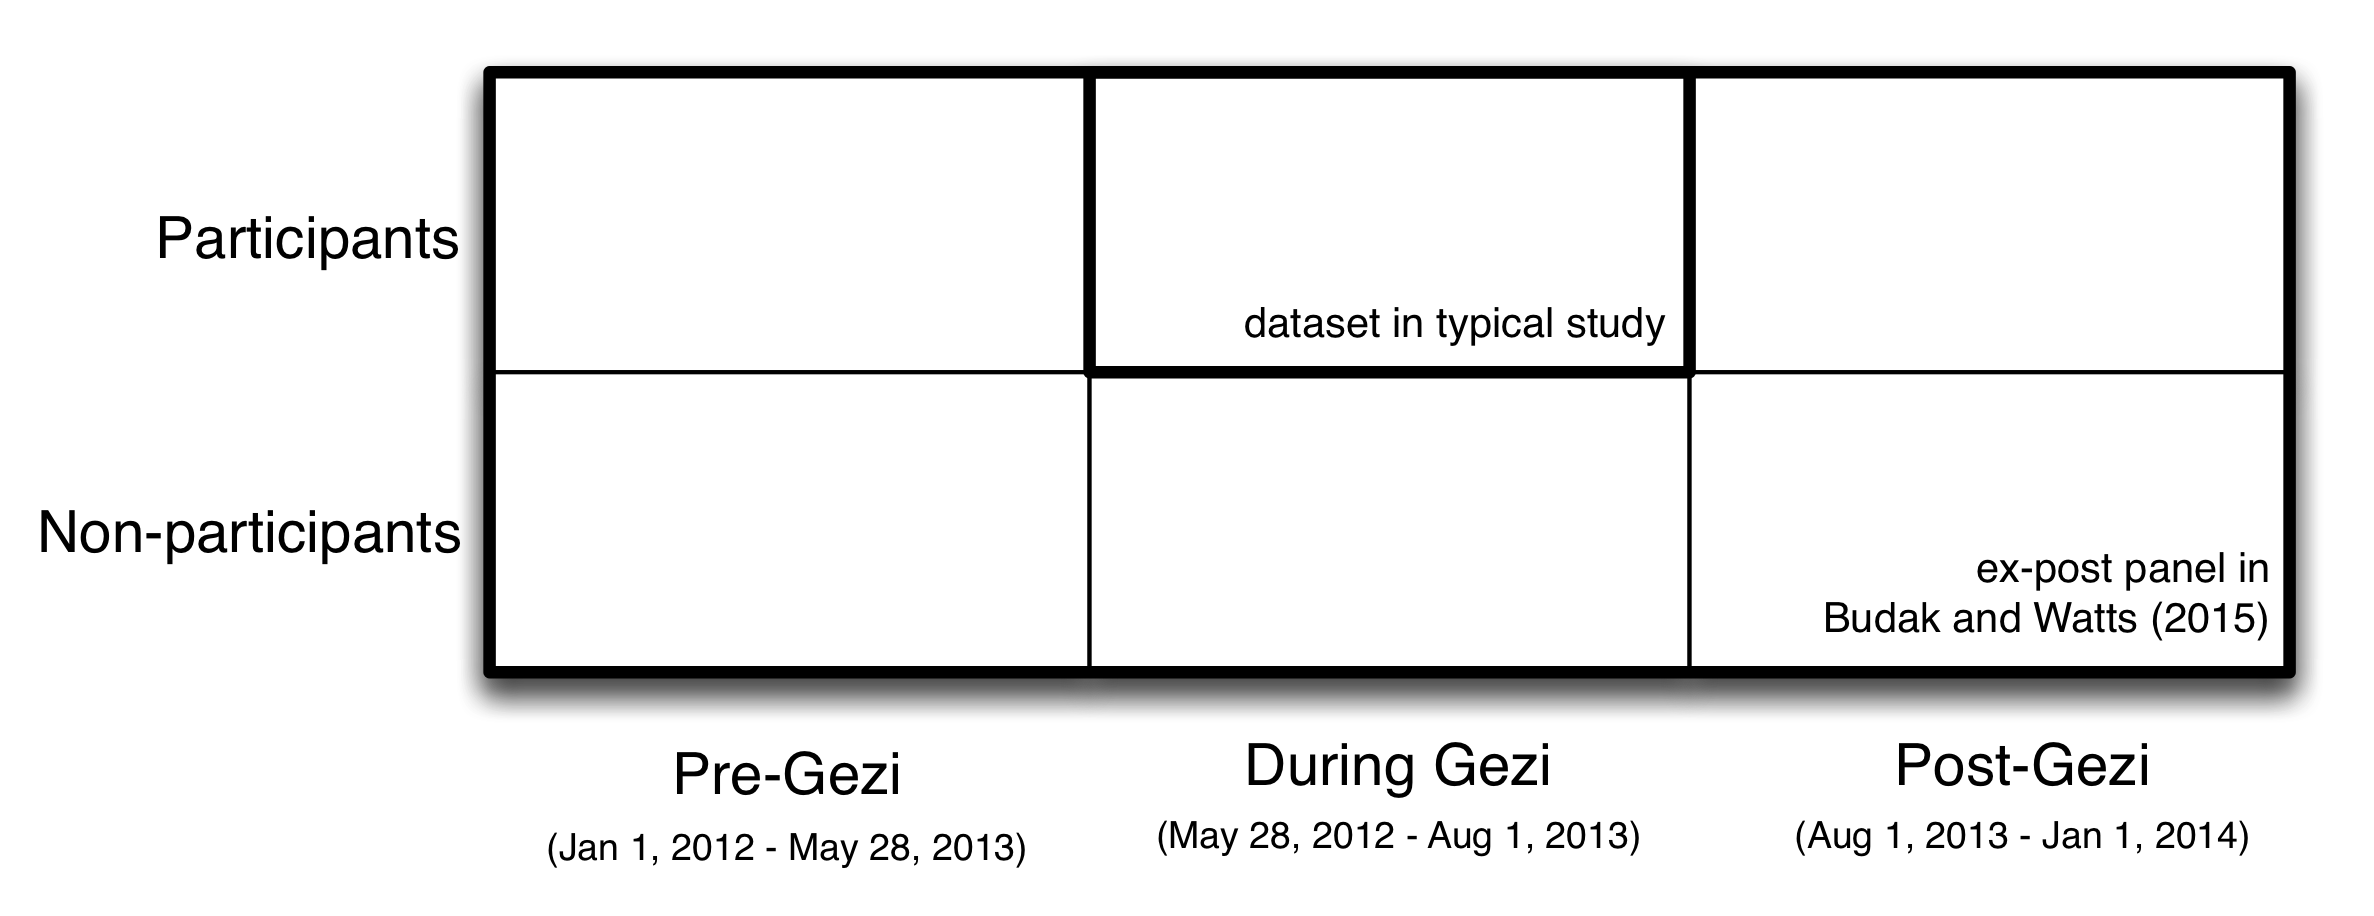 2.1 ábra: Tervezési által használt Budak és Watts (2015), hogy tanulmányozza az Occupy Gezi tüntetések Törökországban nyarán 2013 használatával a mindig a természetre a Twitter, a kutatók létre, amit az úgynevezett utólagos panel, amely tartalmazta körülbelül 30.000 ember több mint két éve. Ezzel szemben a tipikus tanulmány középpontjában a résztvevők a tiltakozások során, az utólagos központ hozzáad 1) adatainak a résztvevők előtt és után az esemény, és 2) az adatok a nem résztvevők előtt, alatt és után az esemény. Ez dúsított adatstruktúra engedélyezve Budak és Watts megbecsülni, milyen az emberek nagyobb valószínűséggel vesznek részt a Gezi tiltakozások és megbecsülni a szemléletváltást a résztvevők és nem résztvevők, mind a rövid távú (összehasonlítva előre Gezi hogy közben Gezi), valamint a hosszú távú (összehasonlítva előre Gezi utáni Gezi).